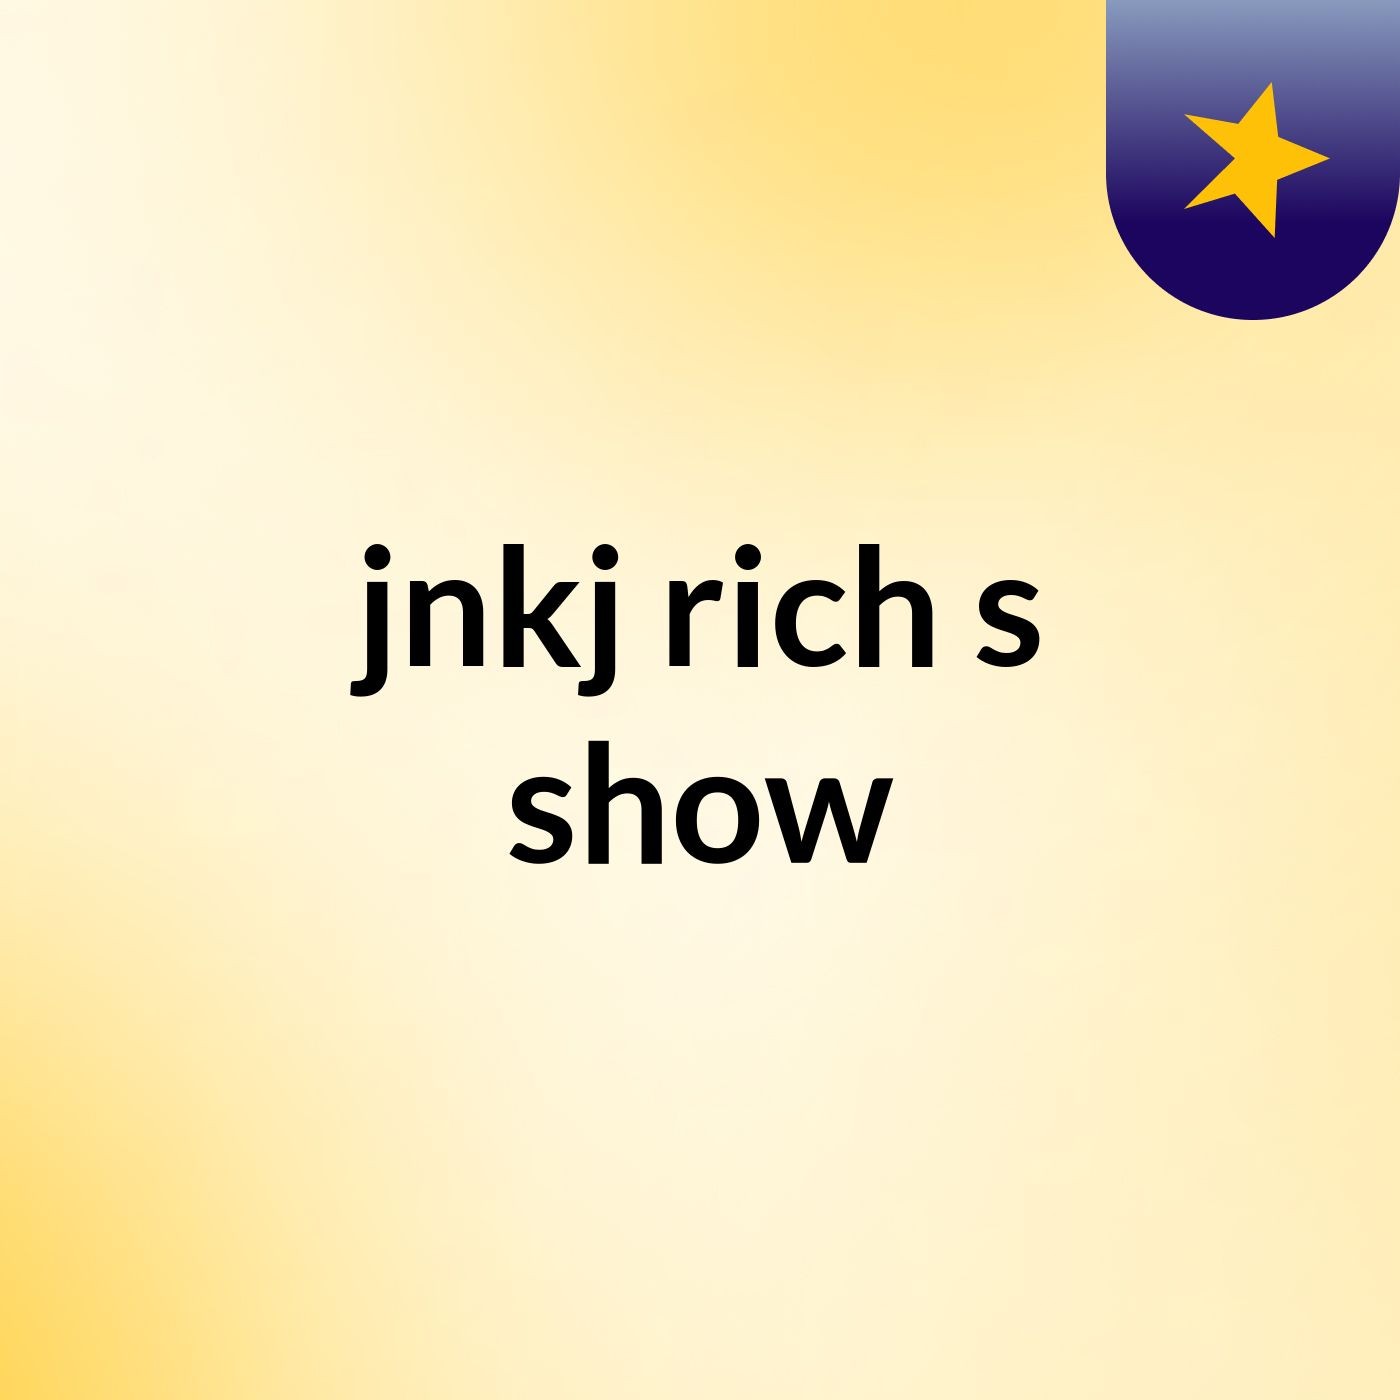 jnkj rich's show